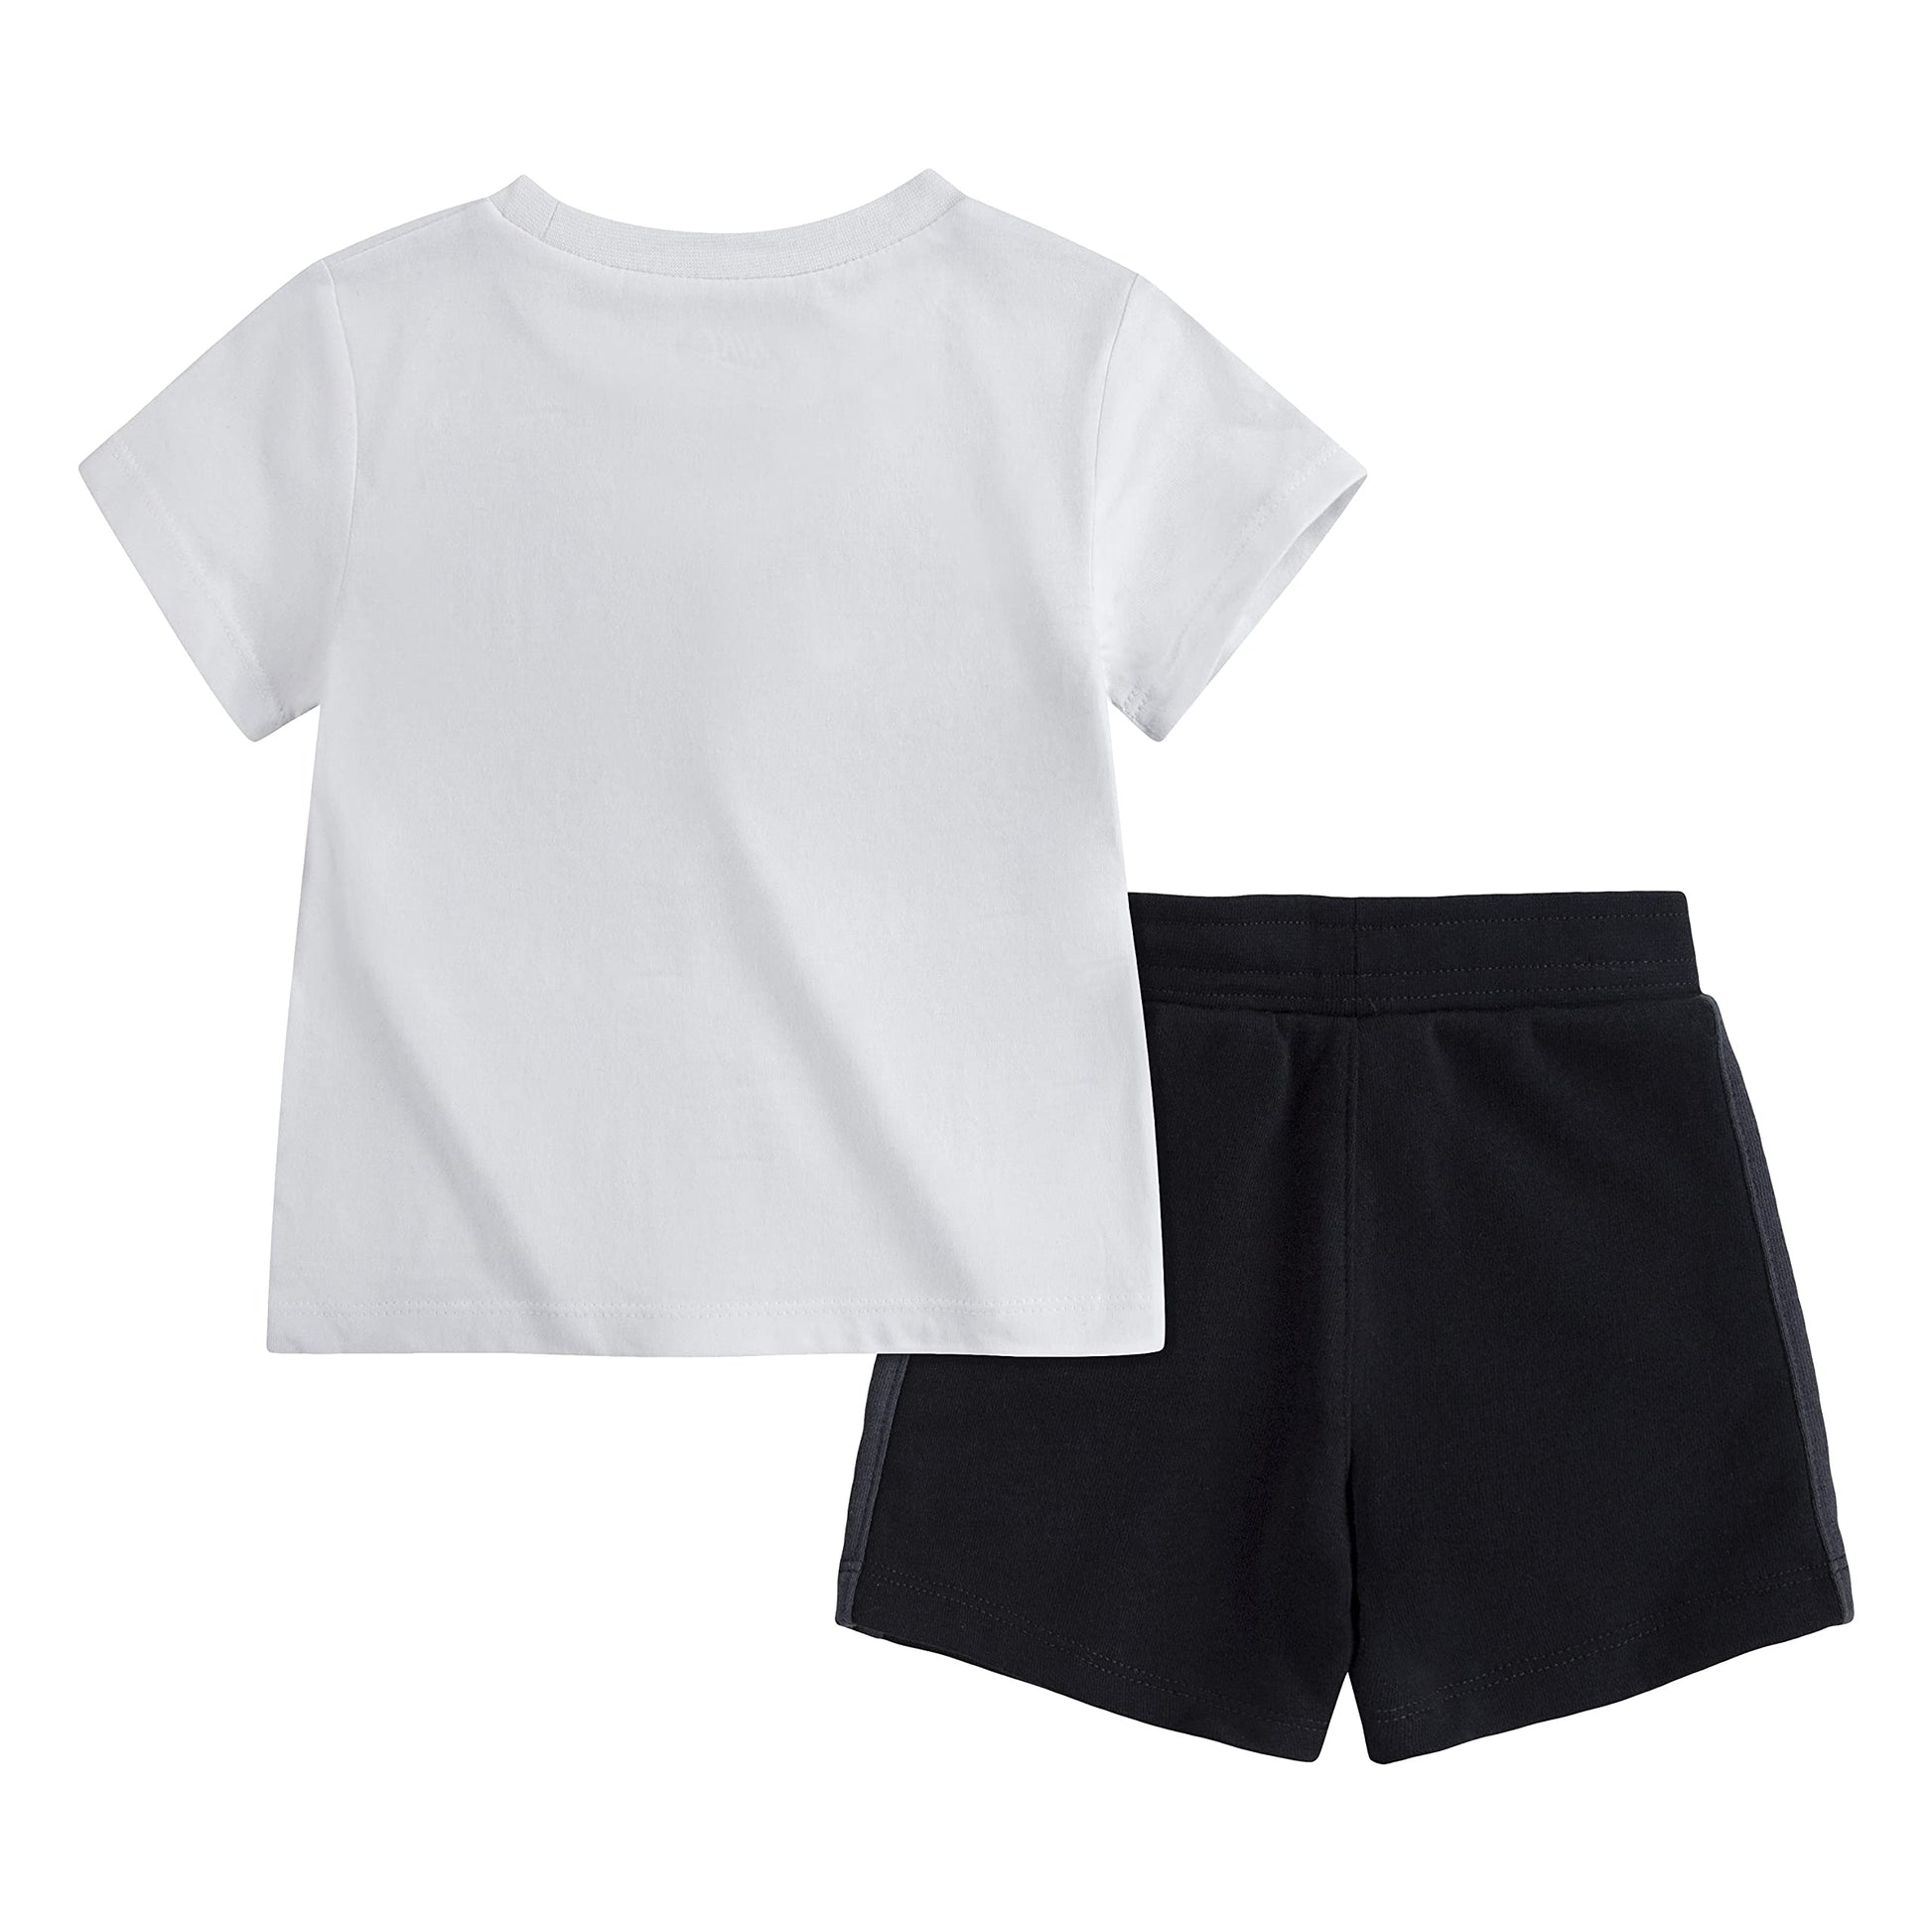 Image 2 of NSW Short Sleeve Air Shorts Set (Infant)